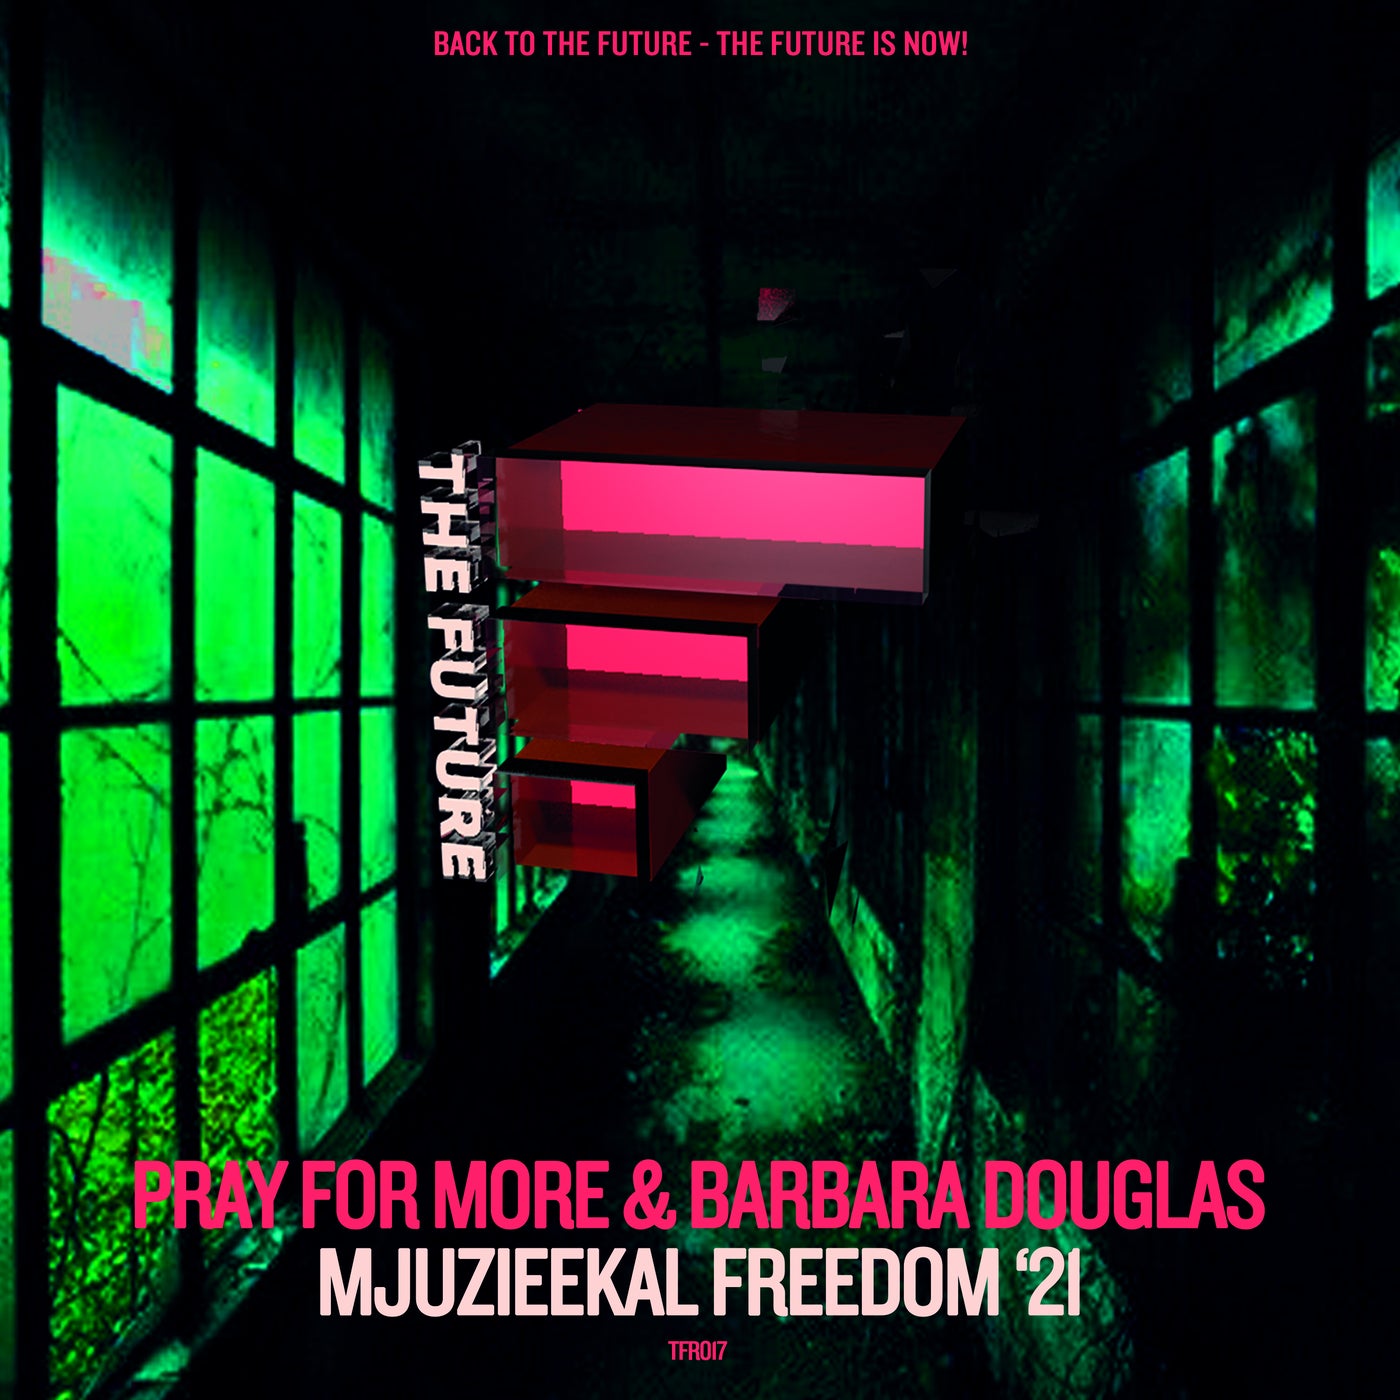 Mjuzieekal Freedom '21